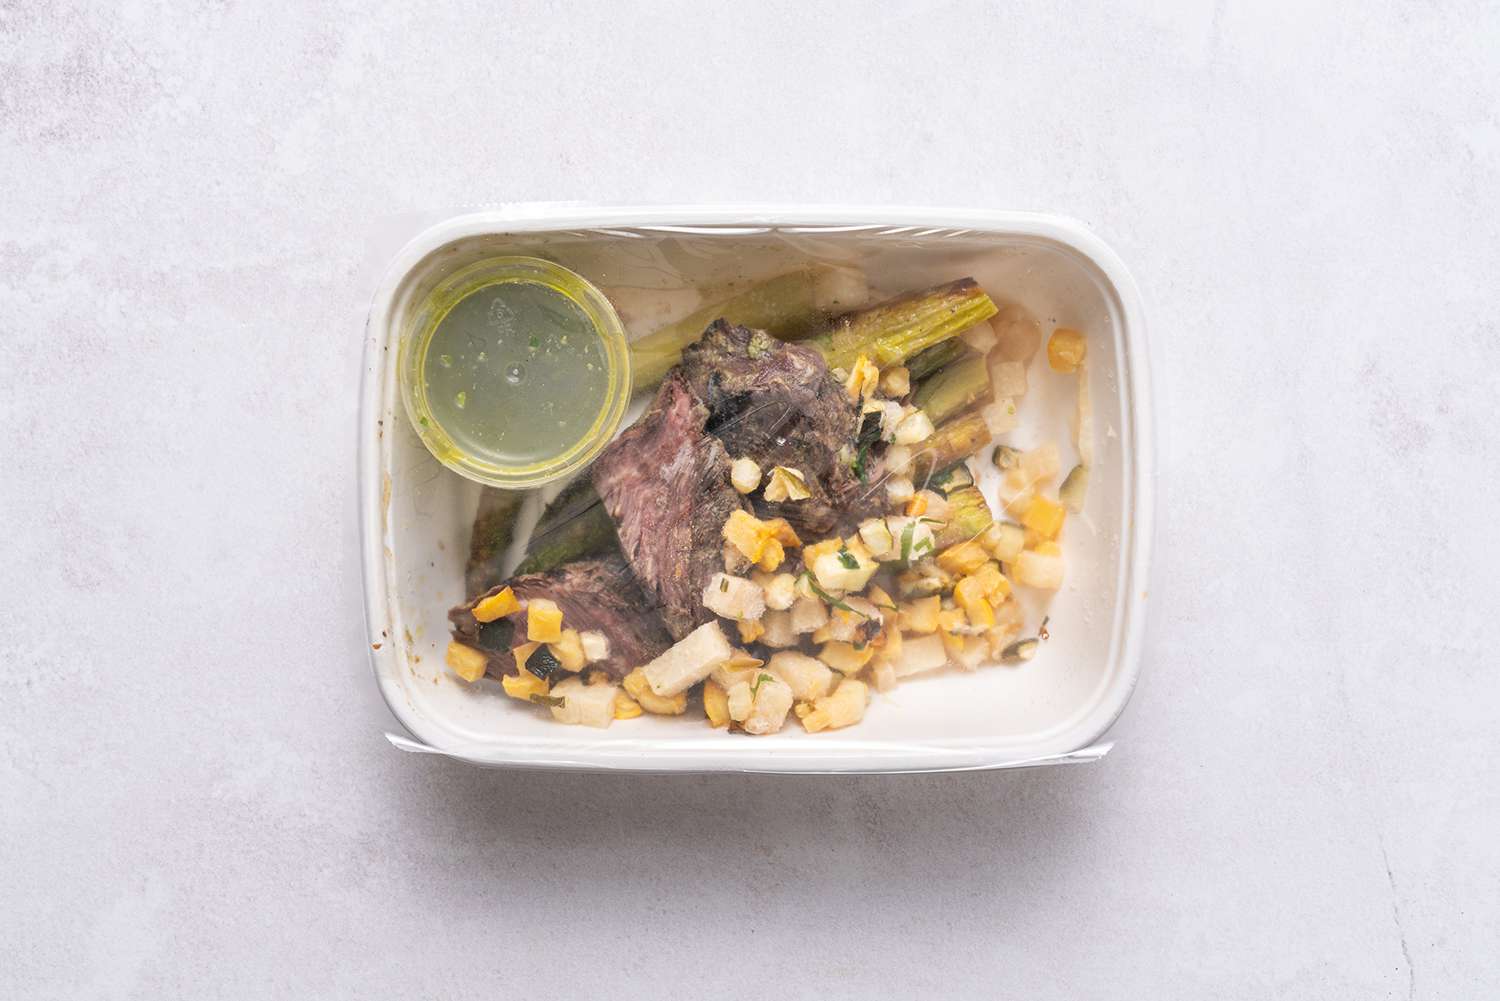 biefstuk, asperges en maïs in een container na het koken